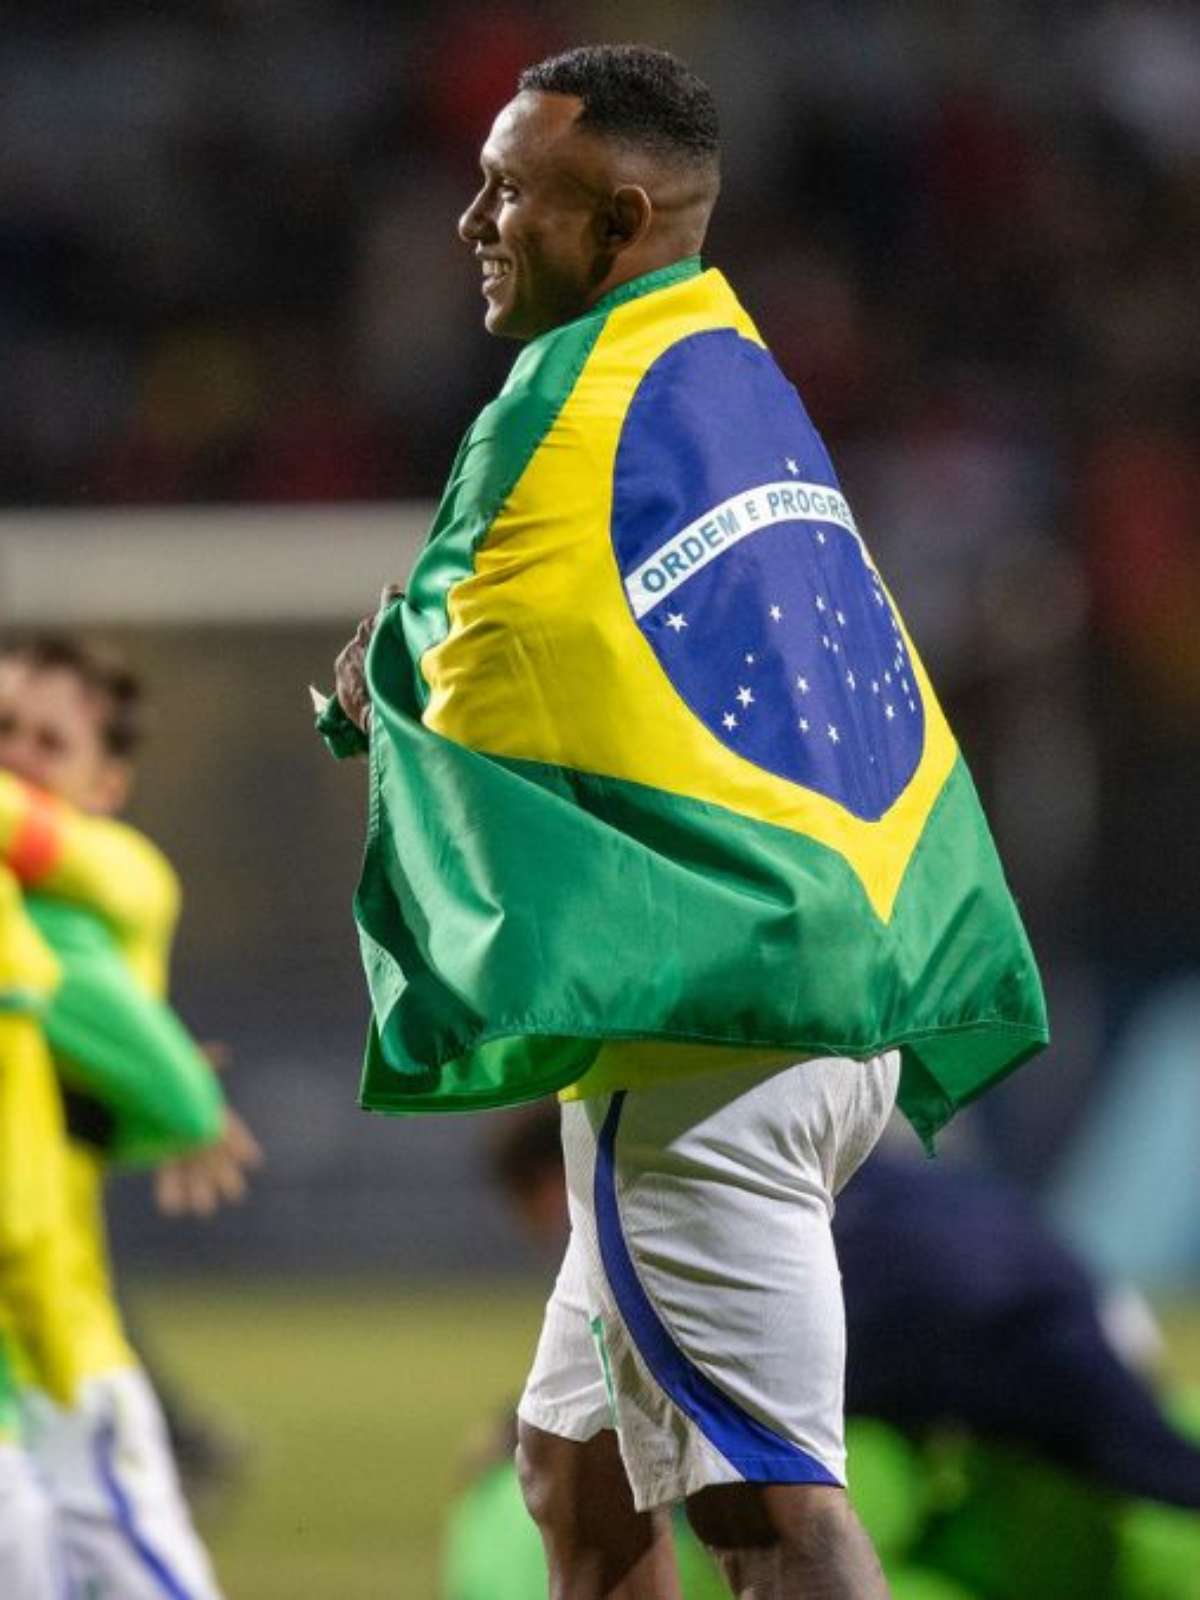 Brasil se torna o único 2º maior campeão Pan-Americano de futebol masculino